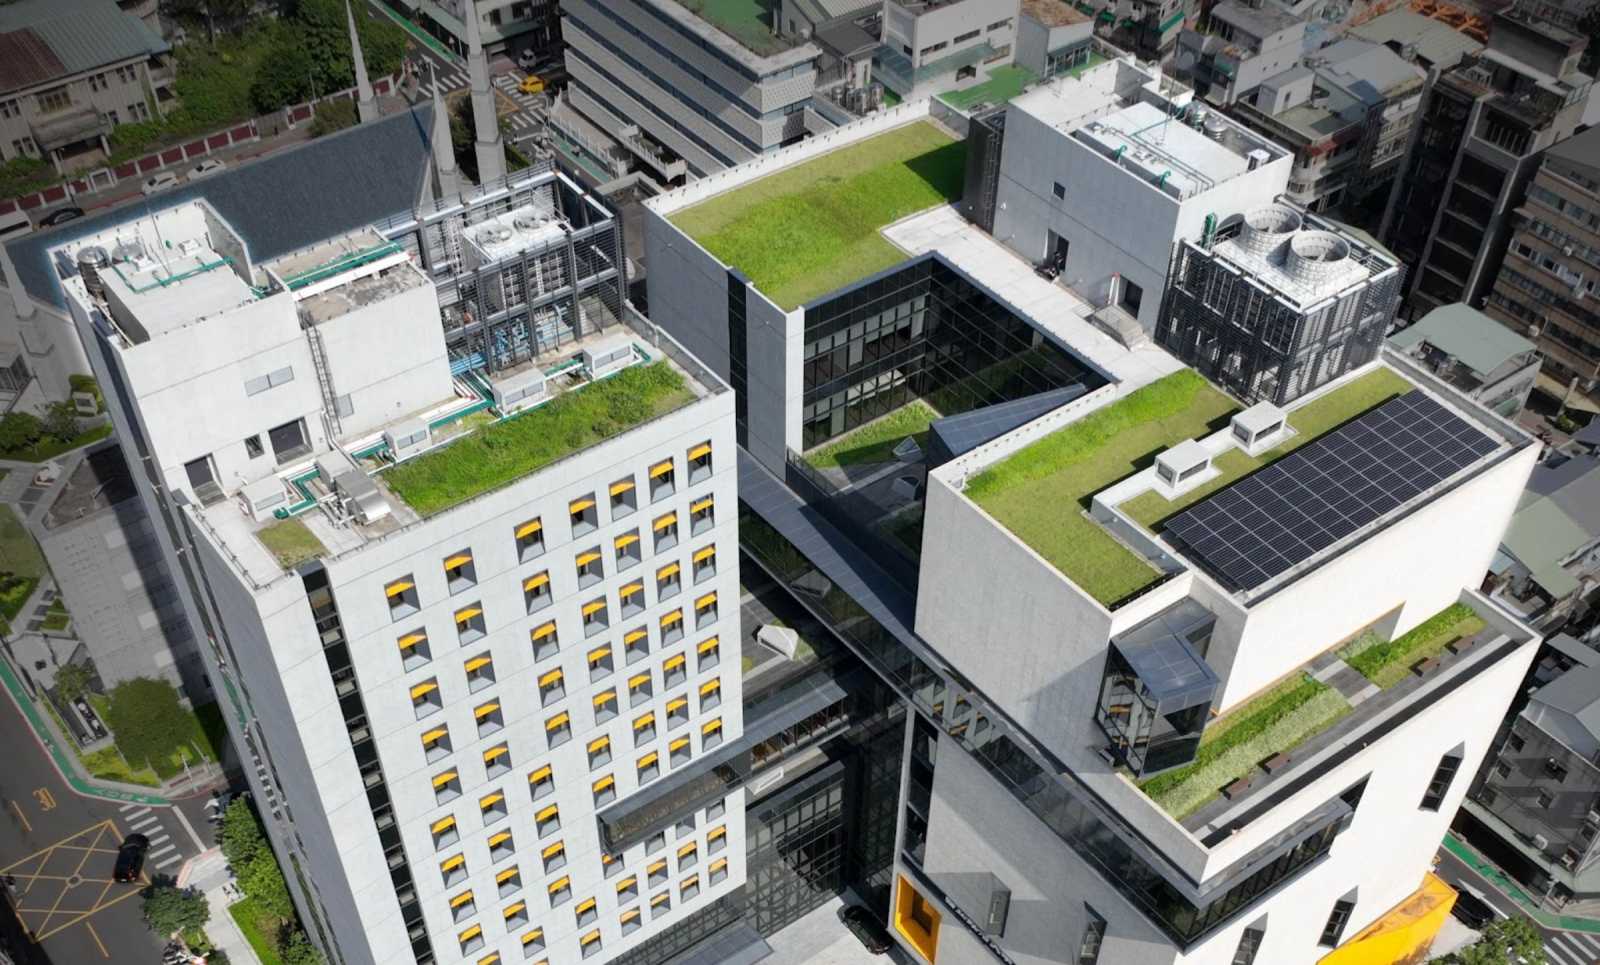 政大公企中心-綠屋頂-節能減碳-景觀-園藝-建築-綠化-療癒-熱島效應-降溫-城市規劃-城市景觀-屋頂花園